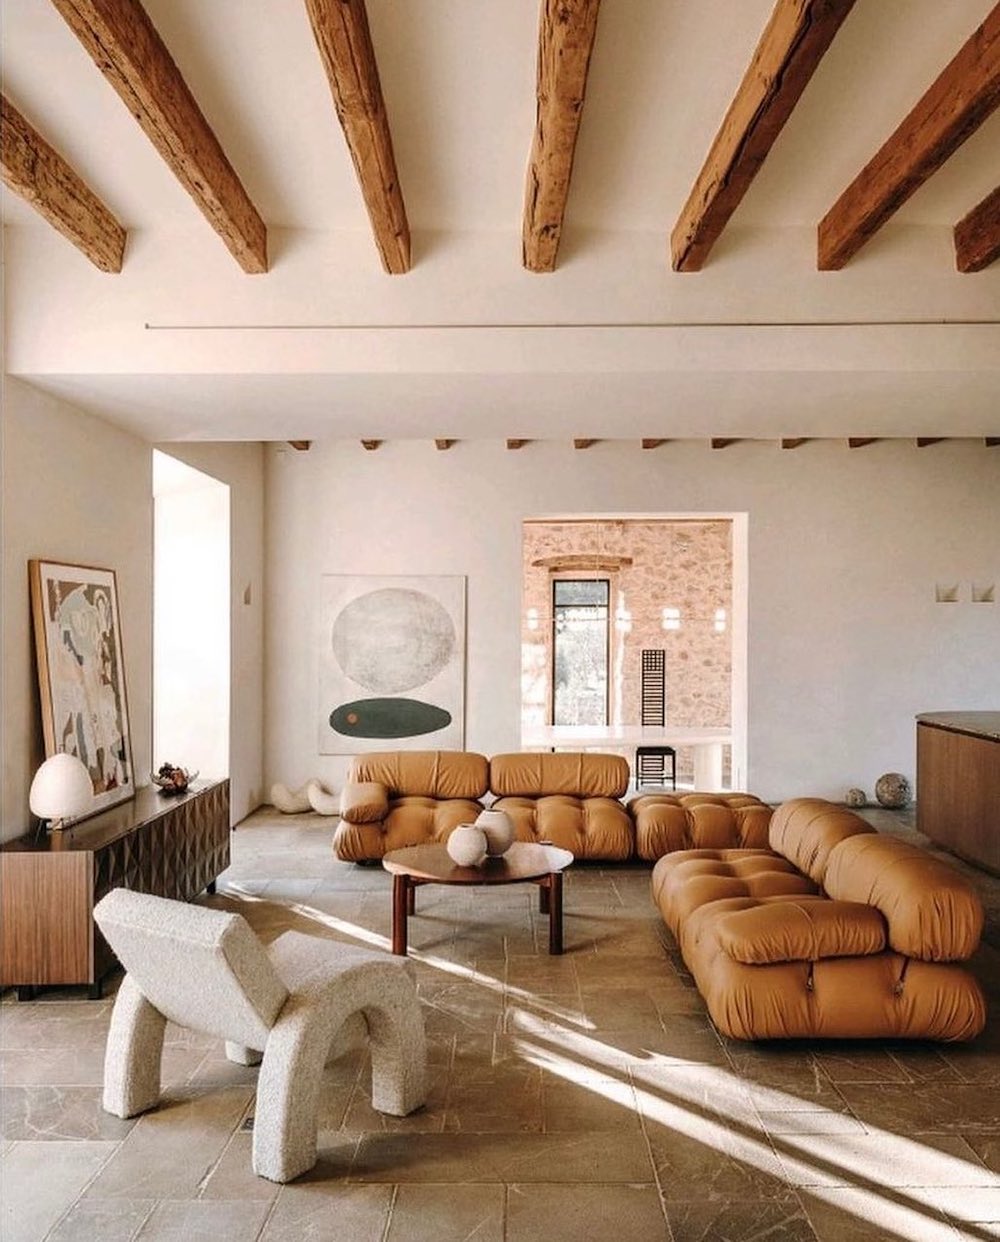 Bellini sofa Mallorca living room decor @bonvivant_concept